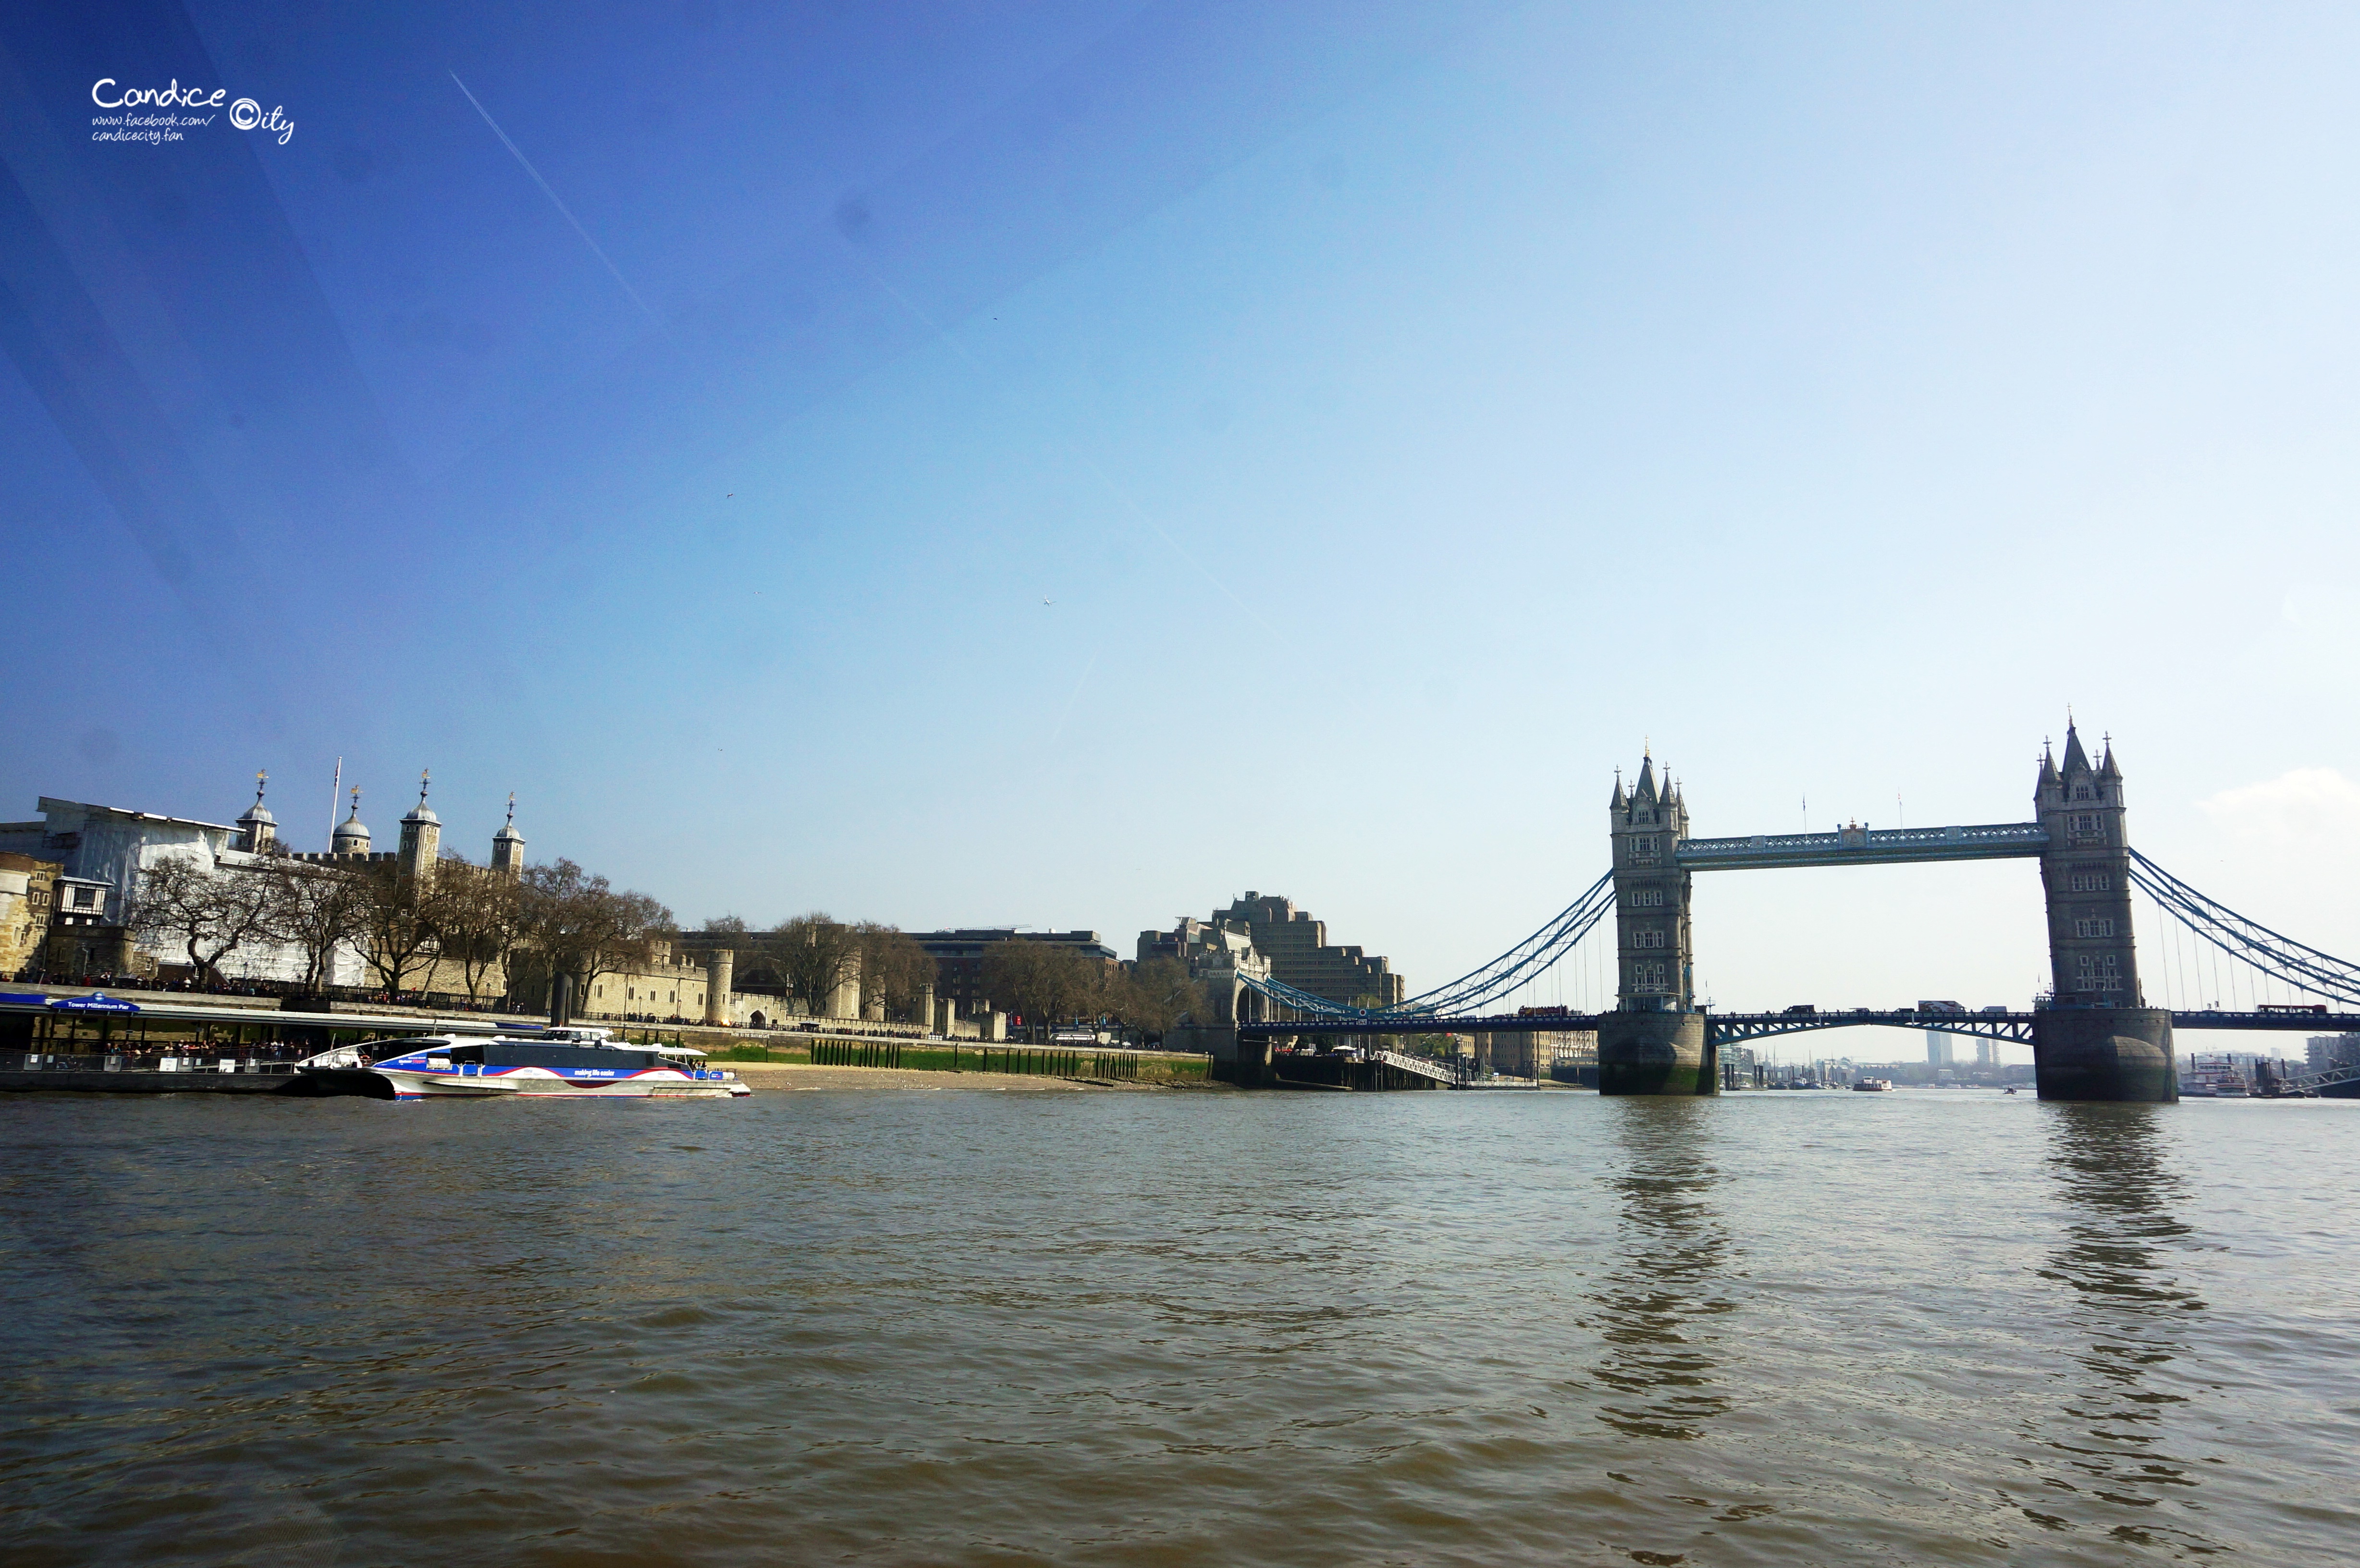 【倫敦景點】必訪行程:泰晤士河遊船citycruises,欣賞倫敦眼 倫敦塔橋風景! @陳小沁の吃喝玩樂